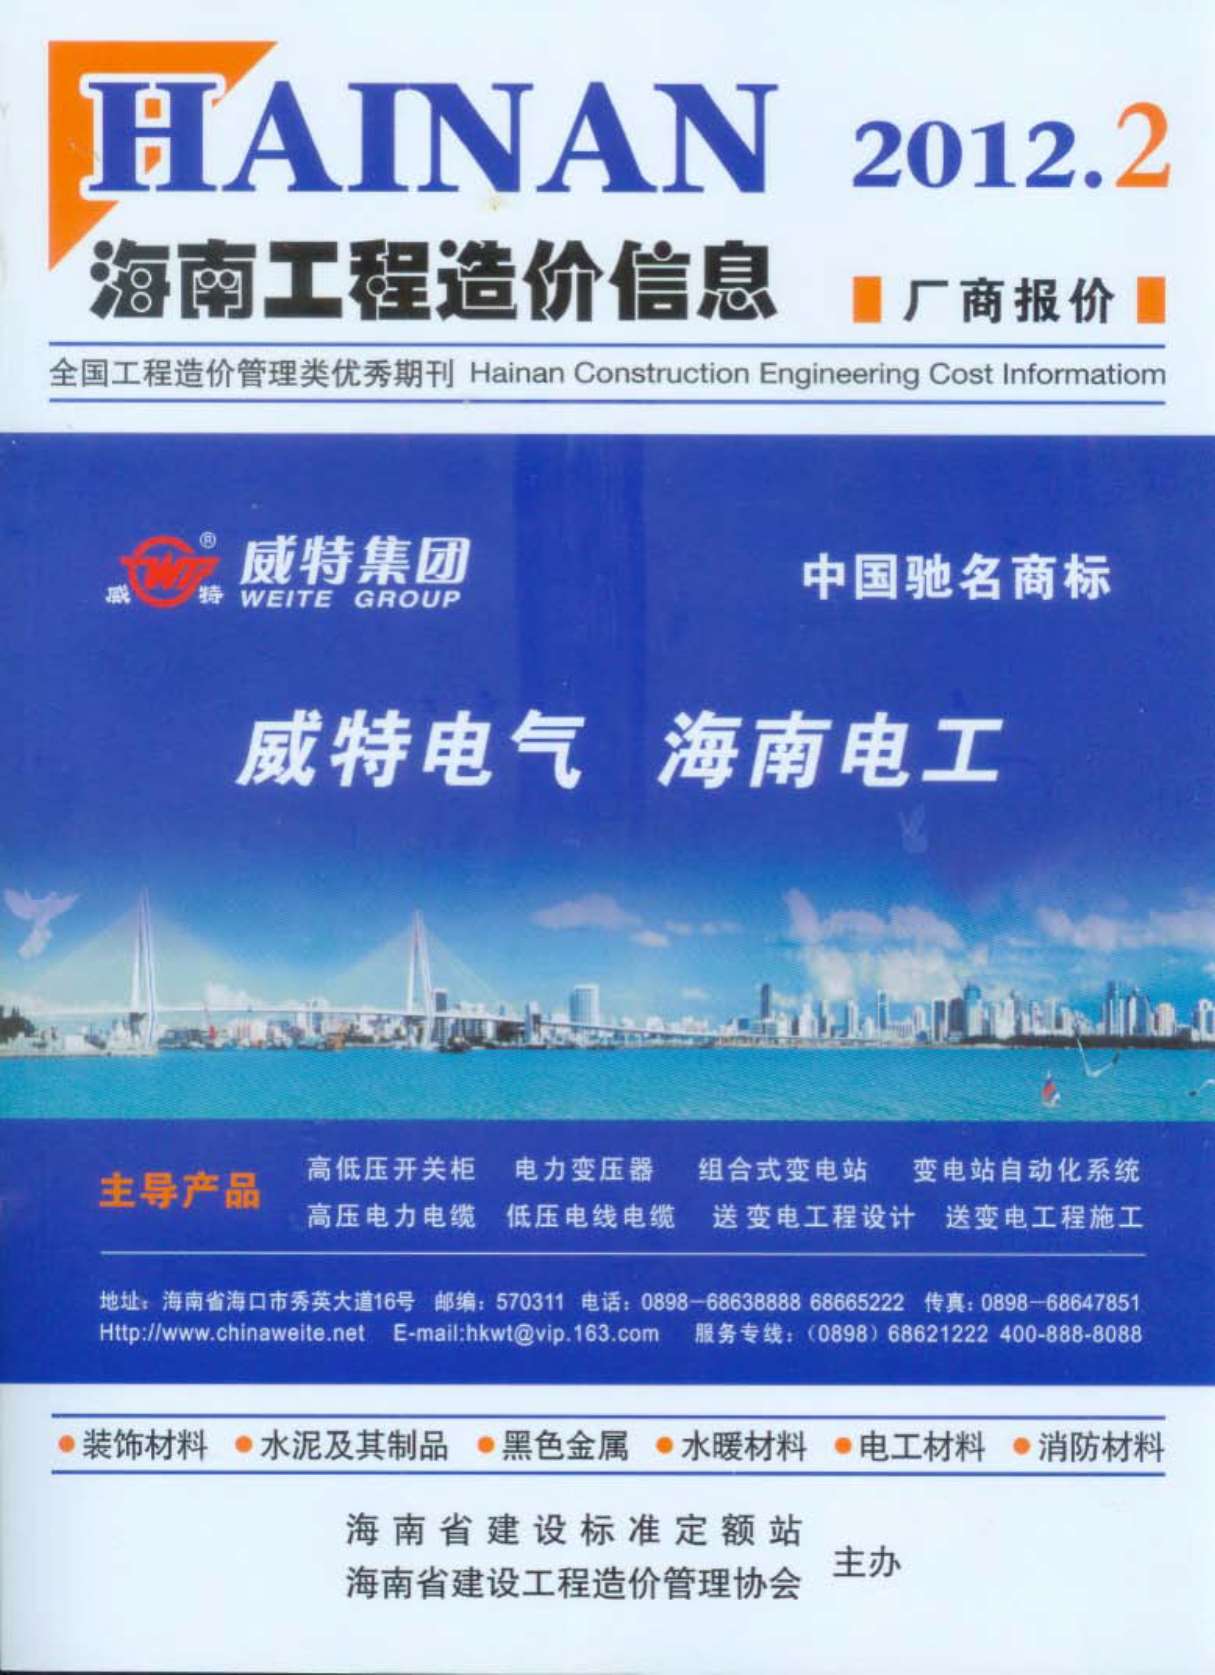 海南省2012年2月造价库数据造价库数据网